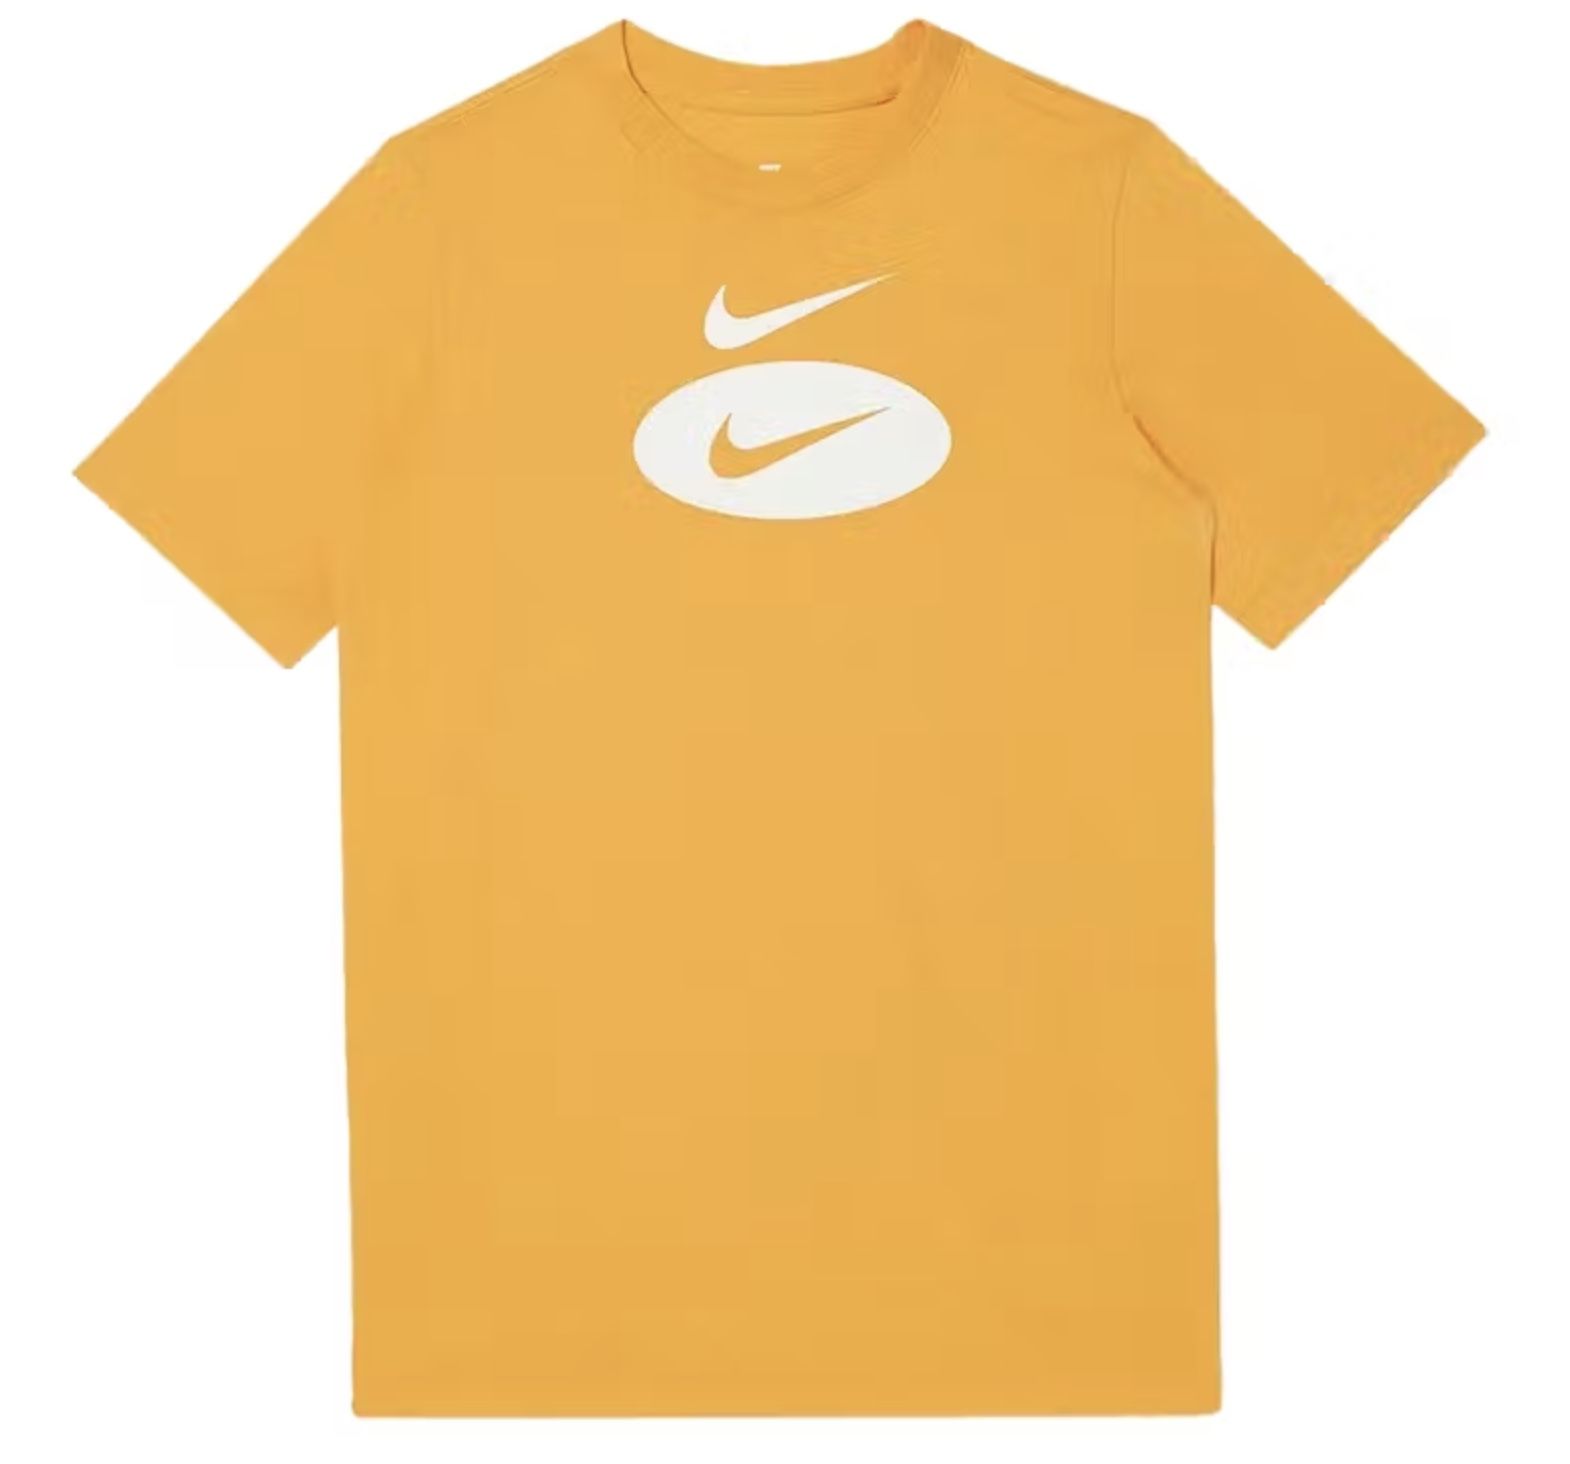 Nike Kinder T Shirt in Orange mit Rippkragen für 9,93€ (statt 19€)